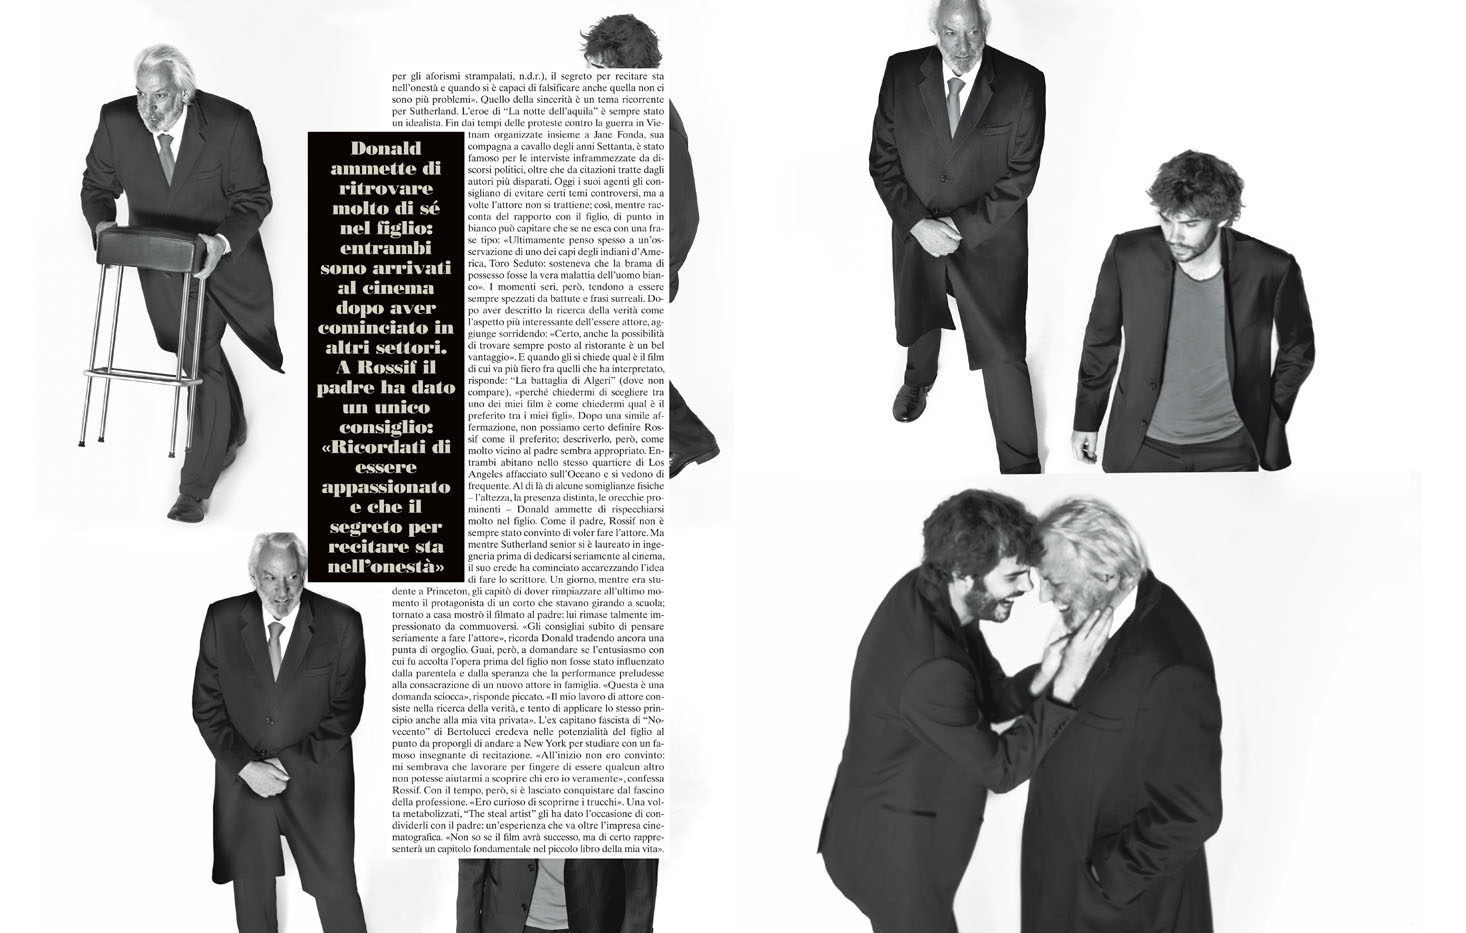 L’Uomo Vogue – featuring Donald Sutherland